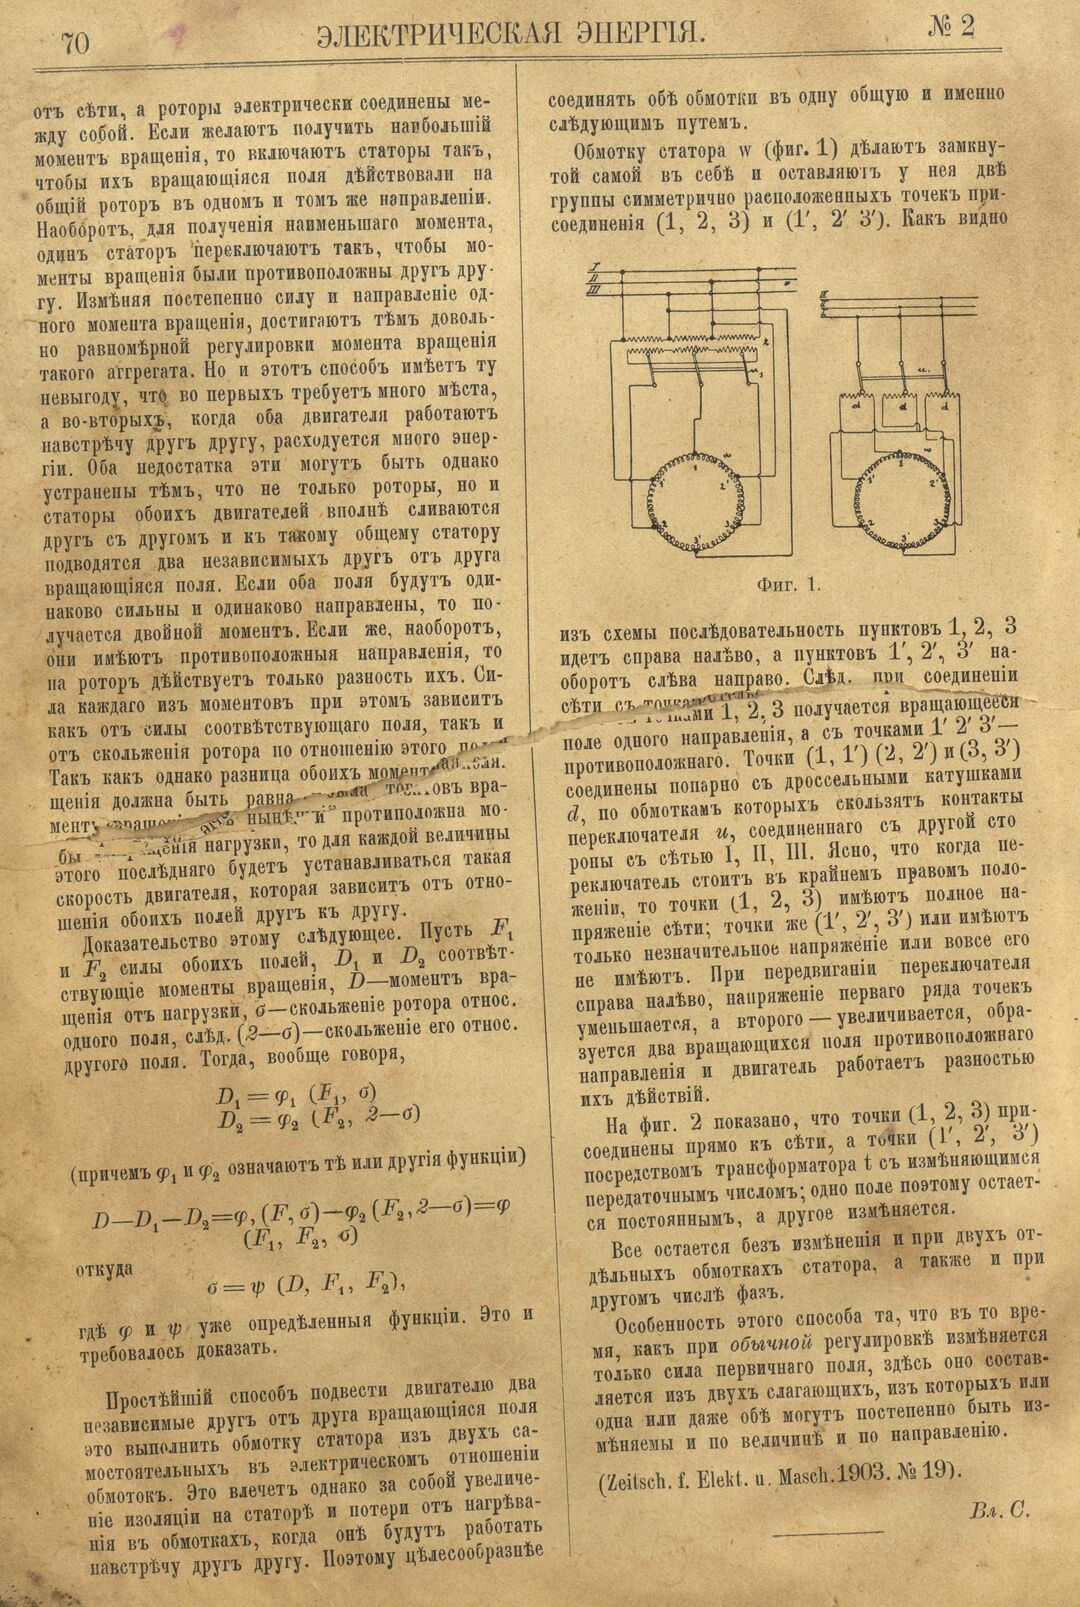 Рис. 1. Журнал Электрическая Энергiя, 2 номер, февраль, 1904 года, страница 70